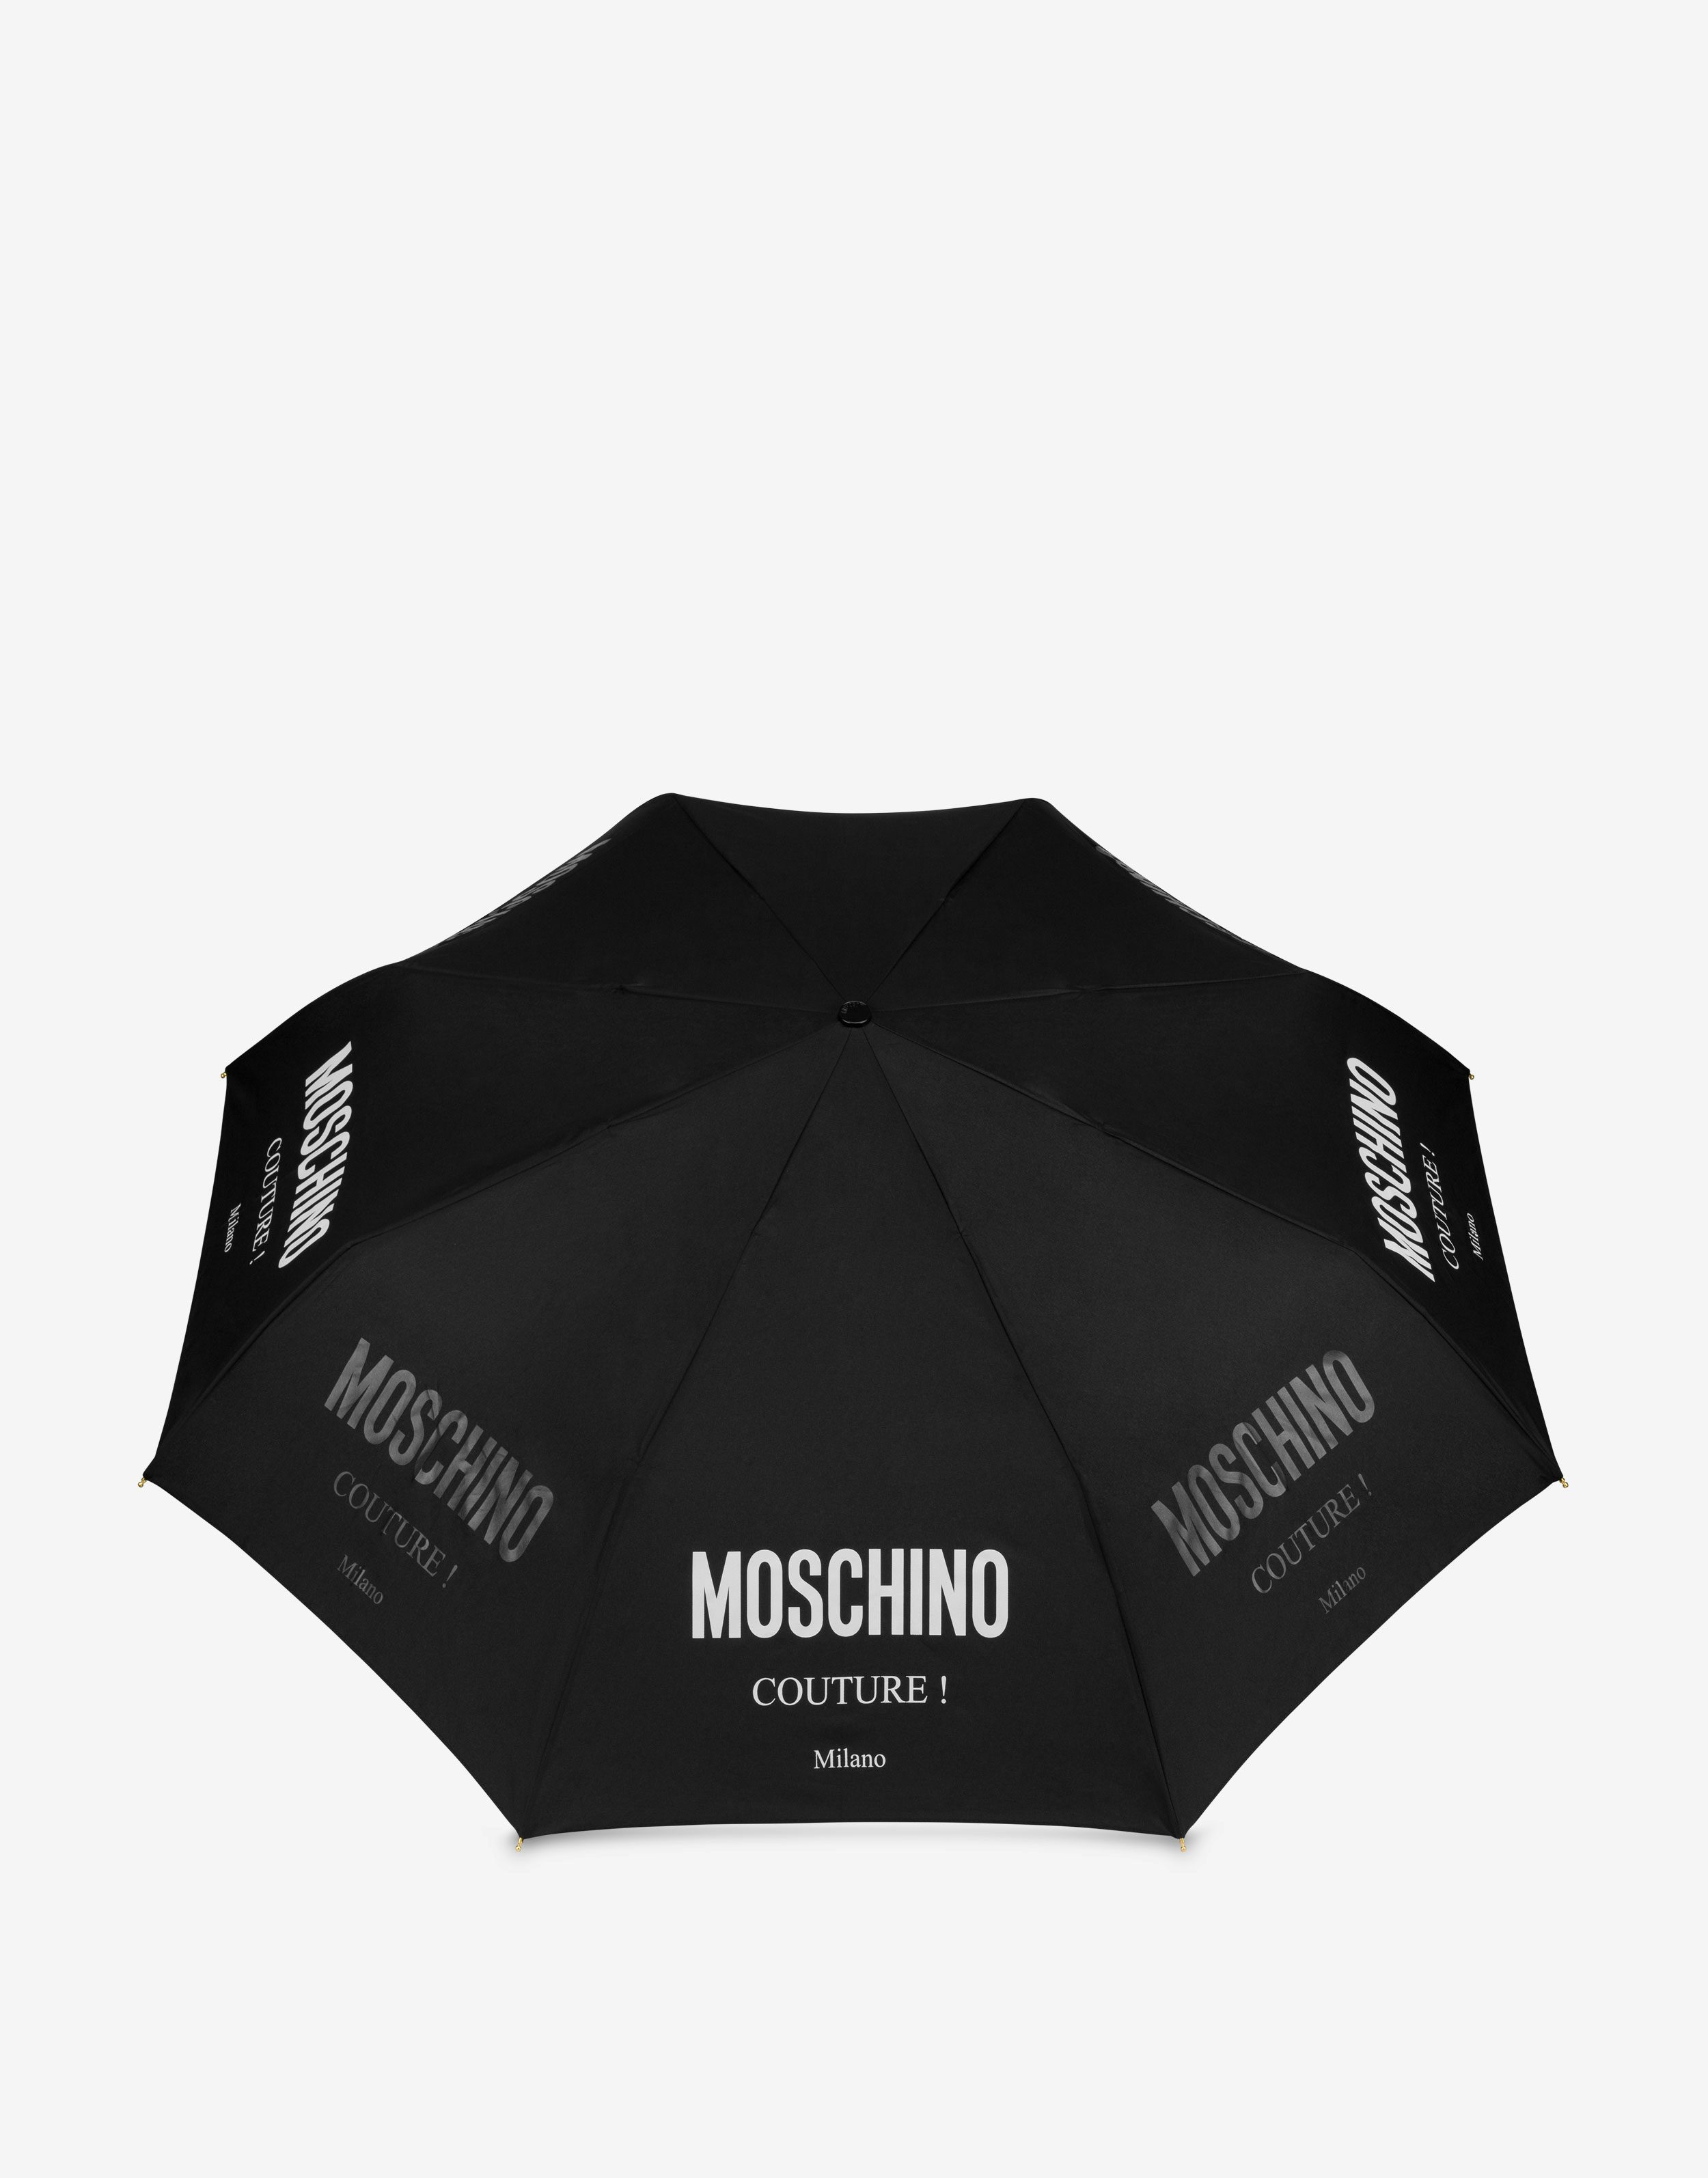 Regenschirm Öffnen/Schließen Moschino Couture